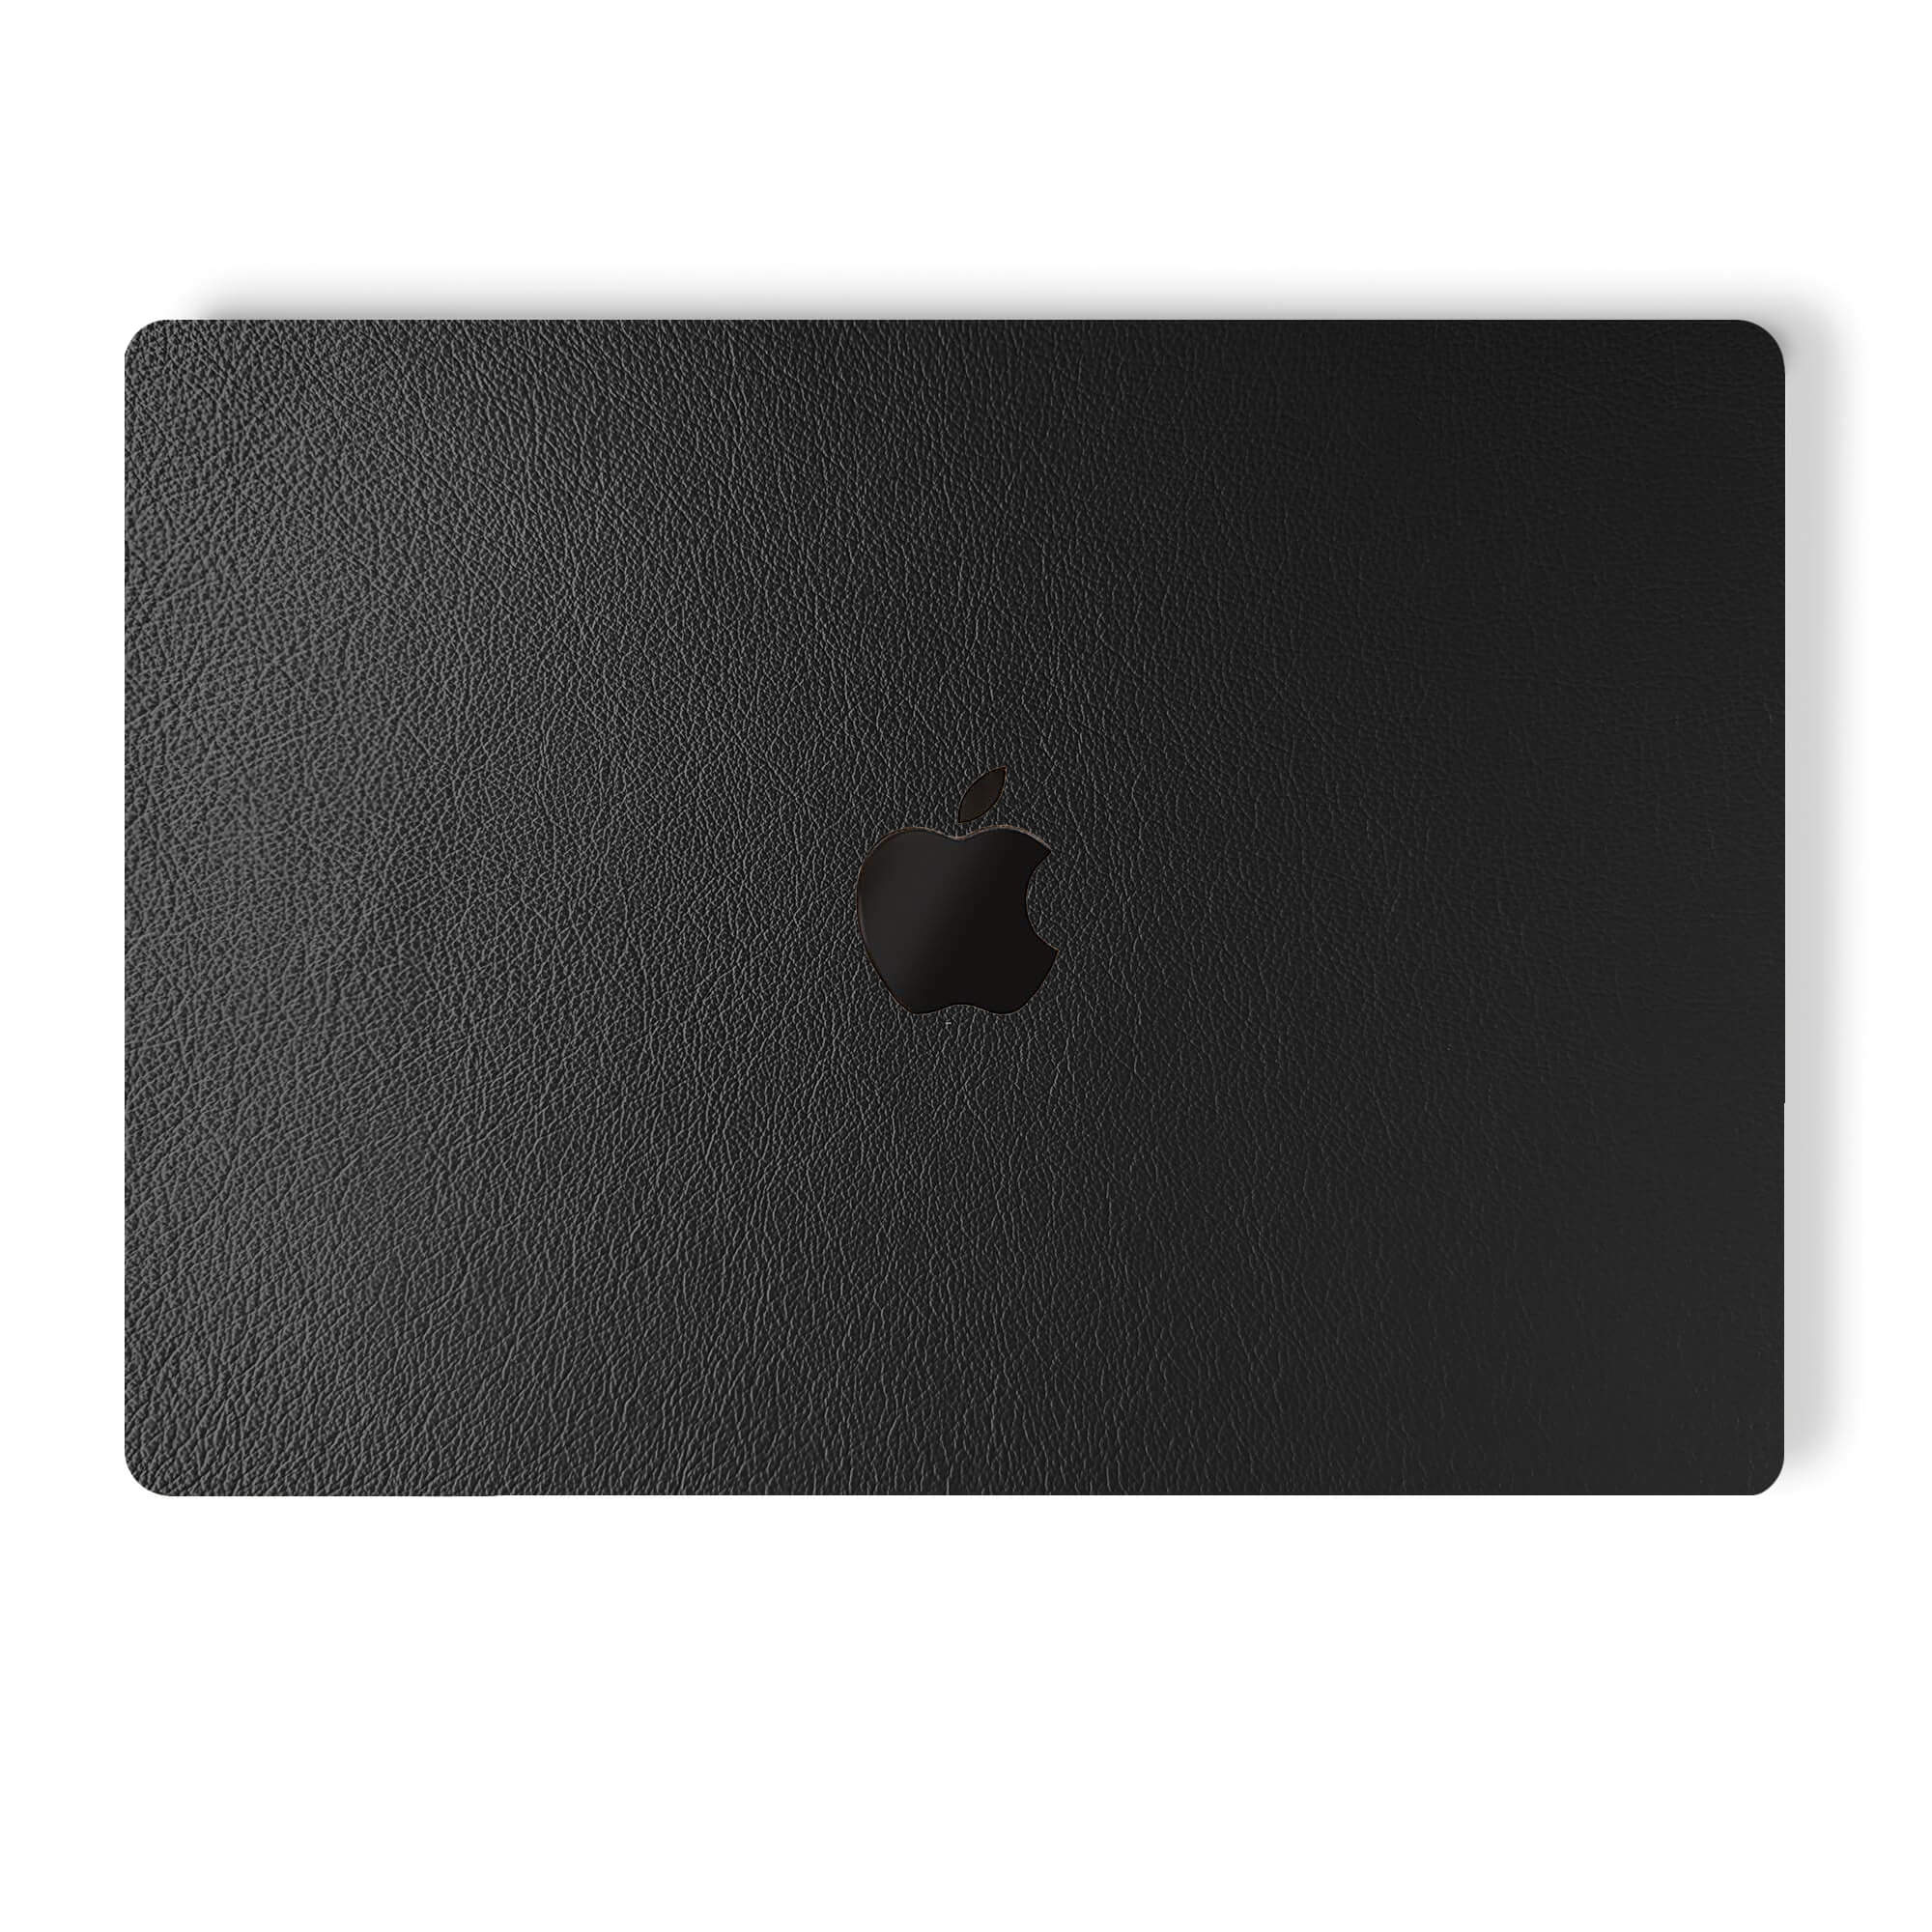 alt:Leather MacBook Skin| var:black |, LBK-MB-Pro16, LBK-MB-Pro15, LBK-MB-Pro1320, LBK-MB-Air20, LBK-MB-Ret15, LBK-MB-Ret13, LBK-MB-Air13, LBK-MB-12